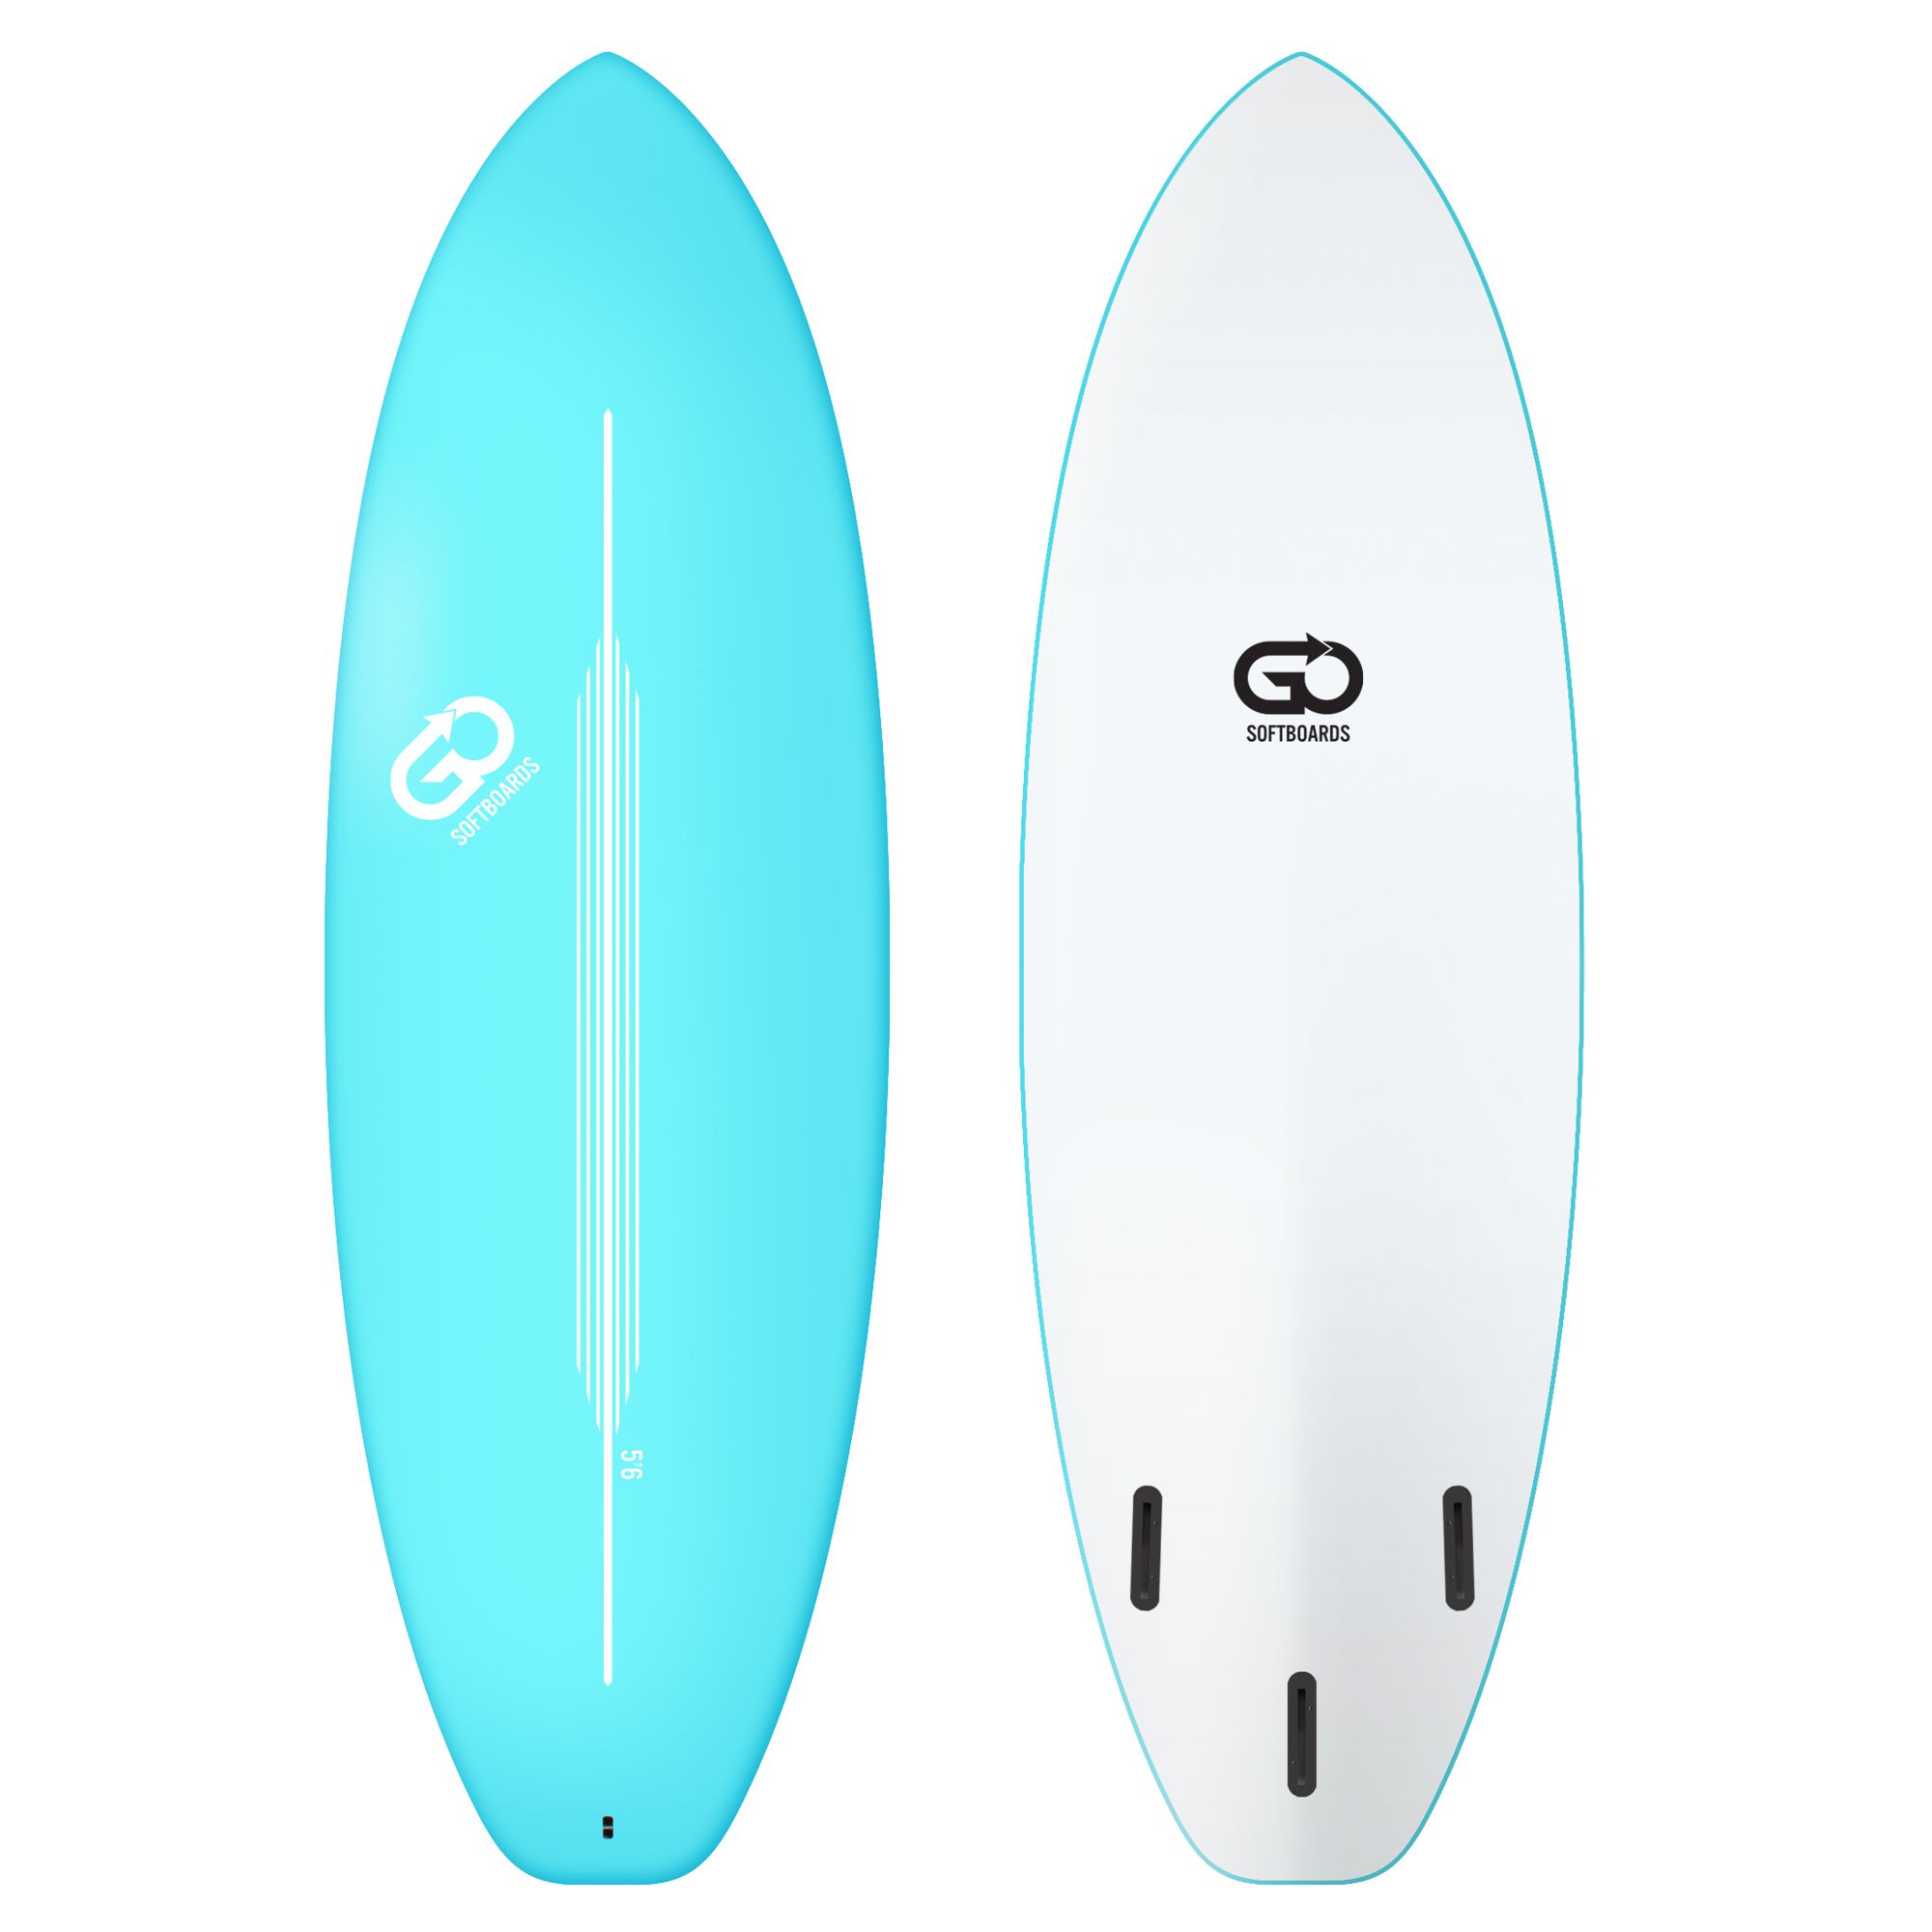 GO Softboard 5.6 Hyper Soft Top Surfboard Blau